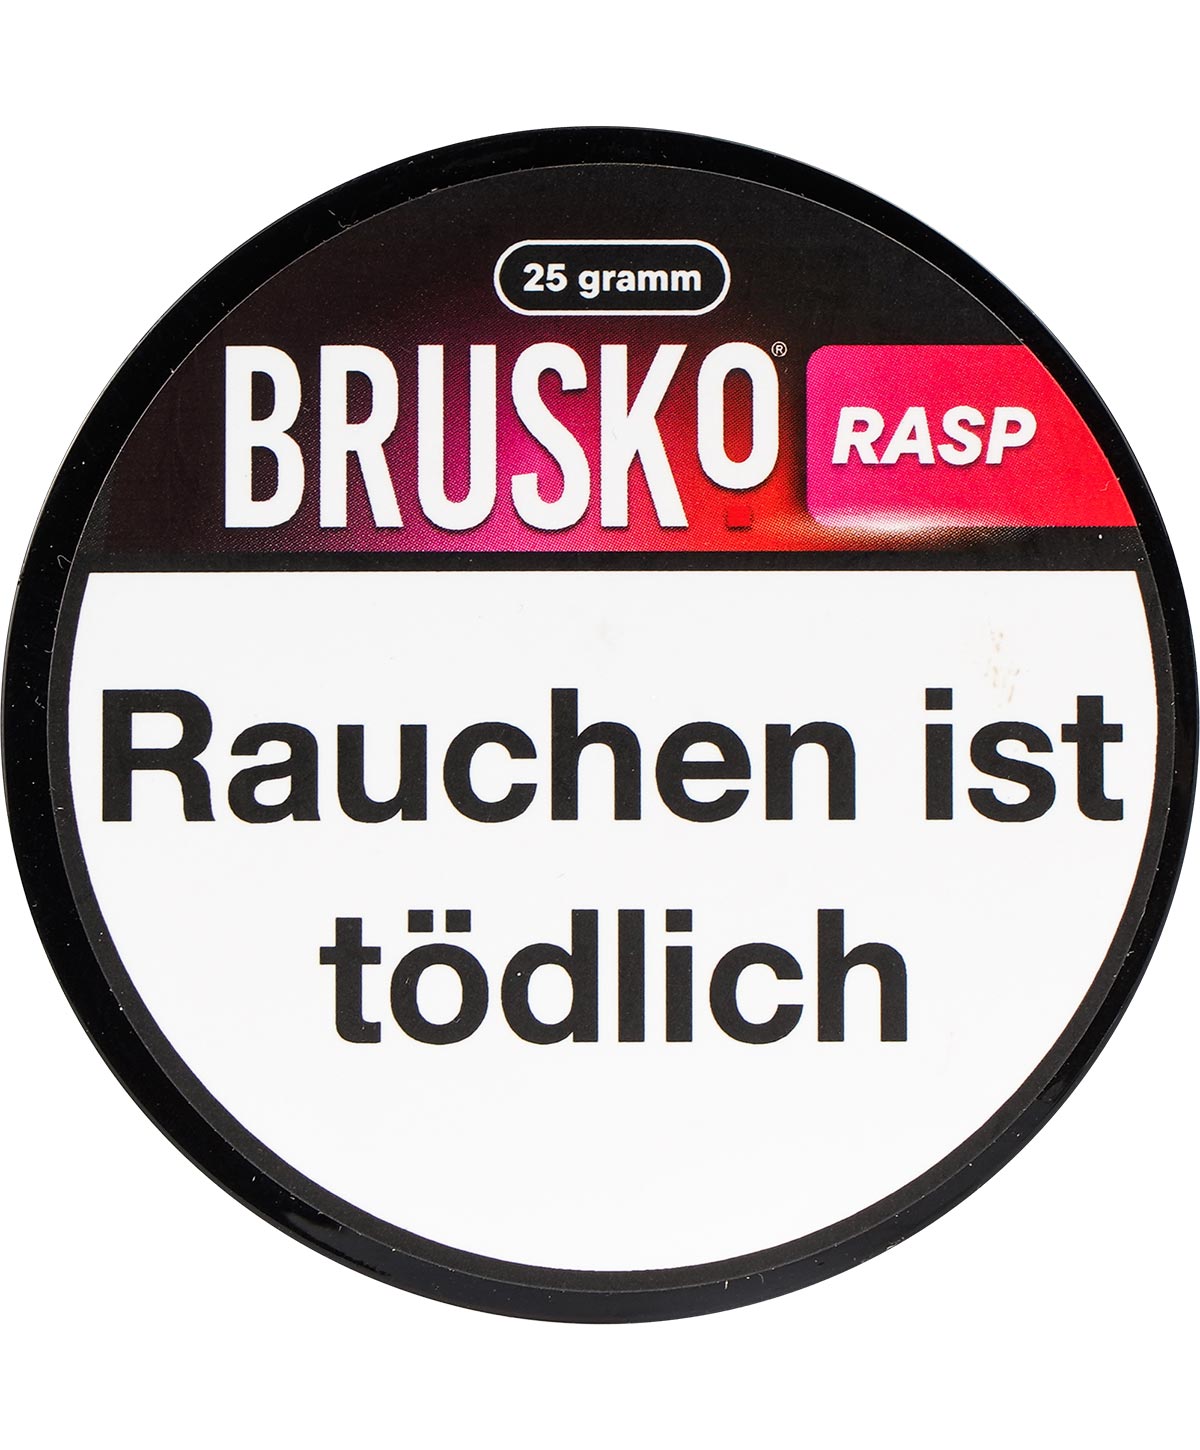 Brusko - Rasp 25g